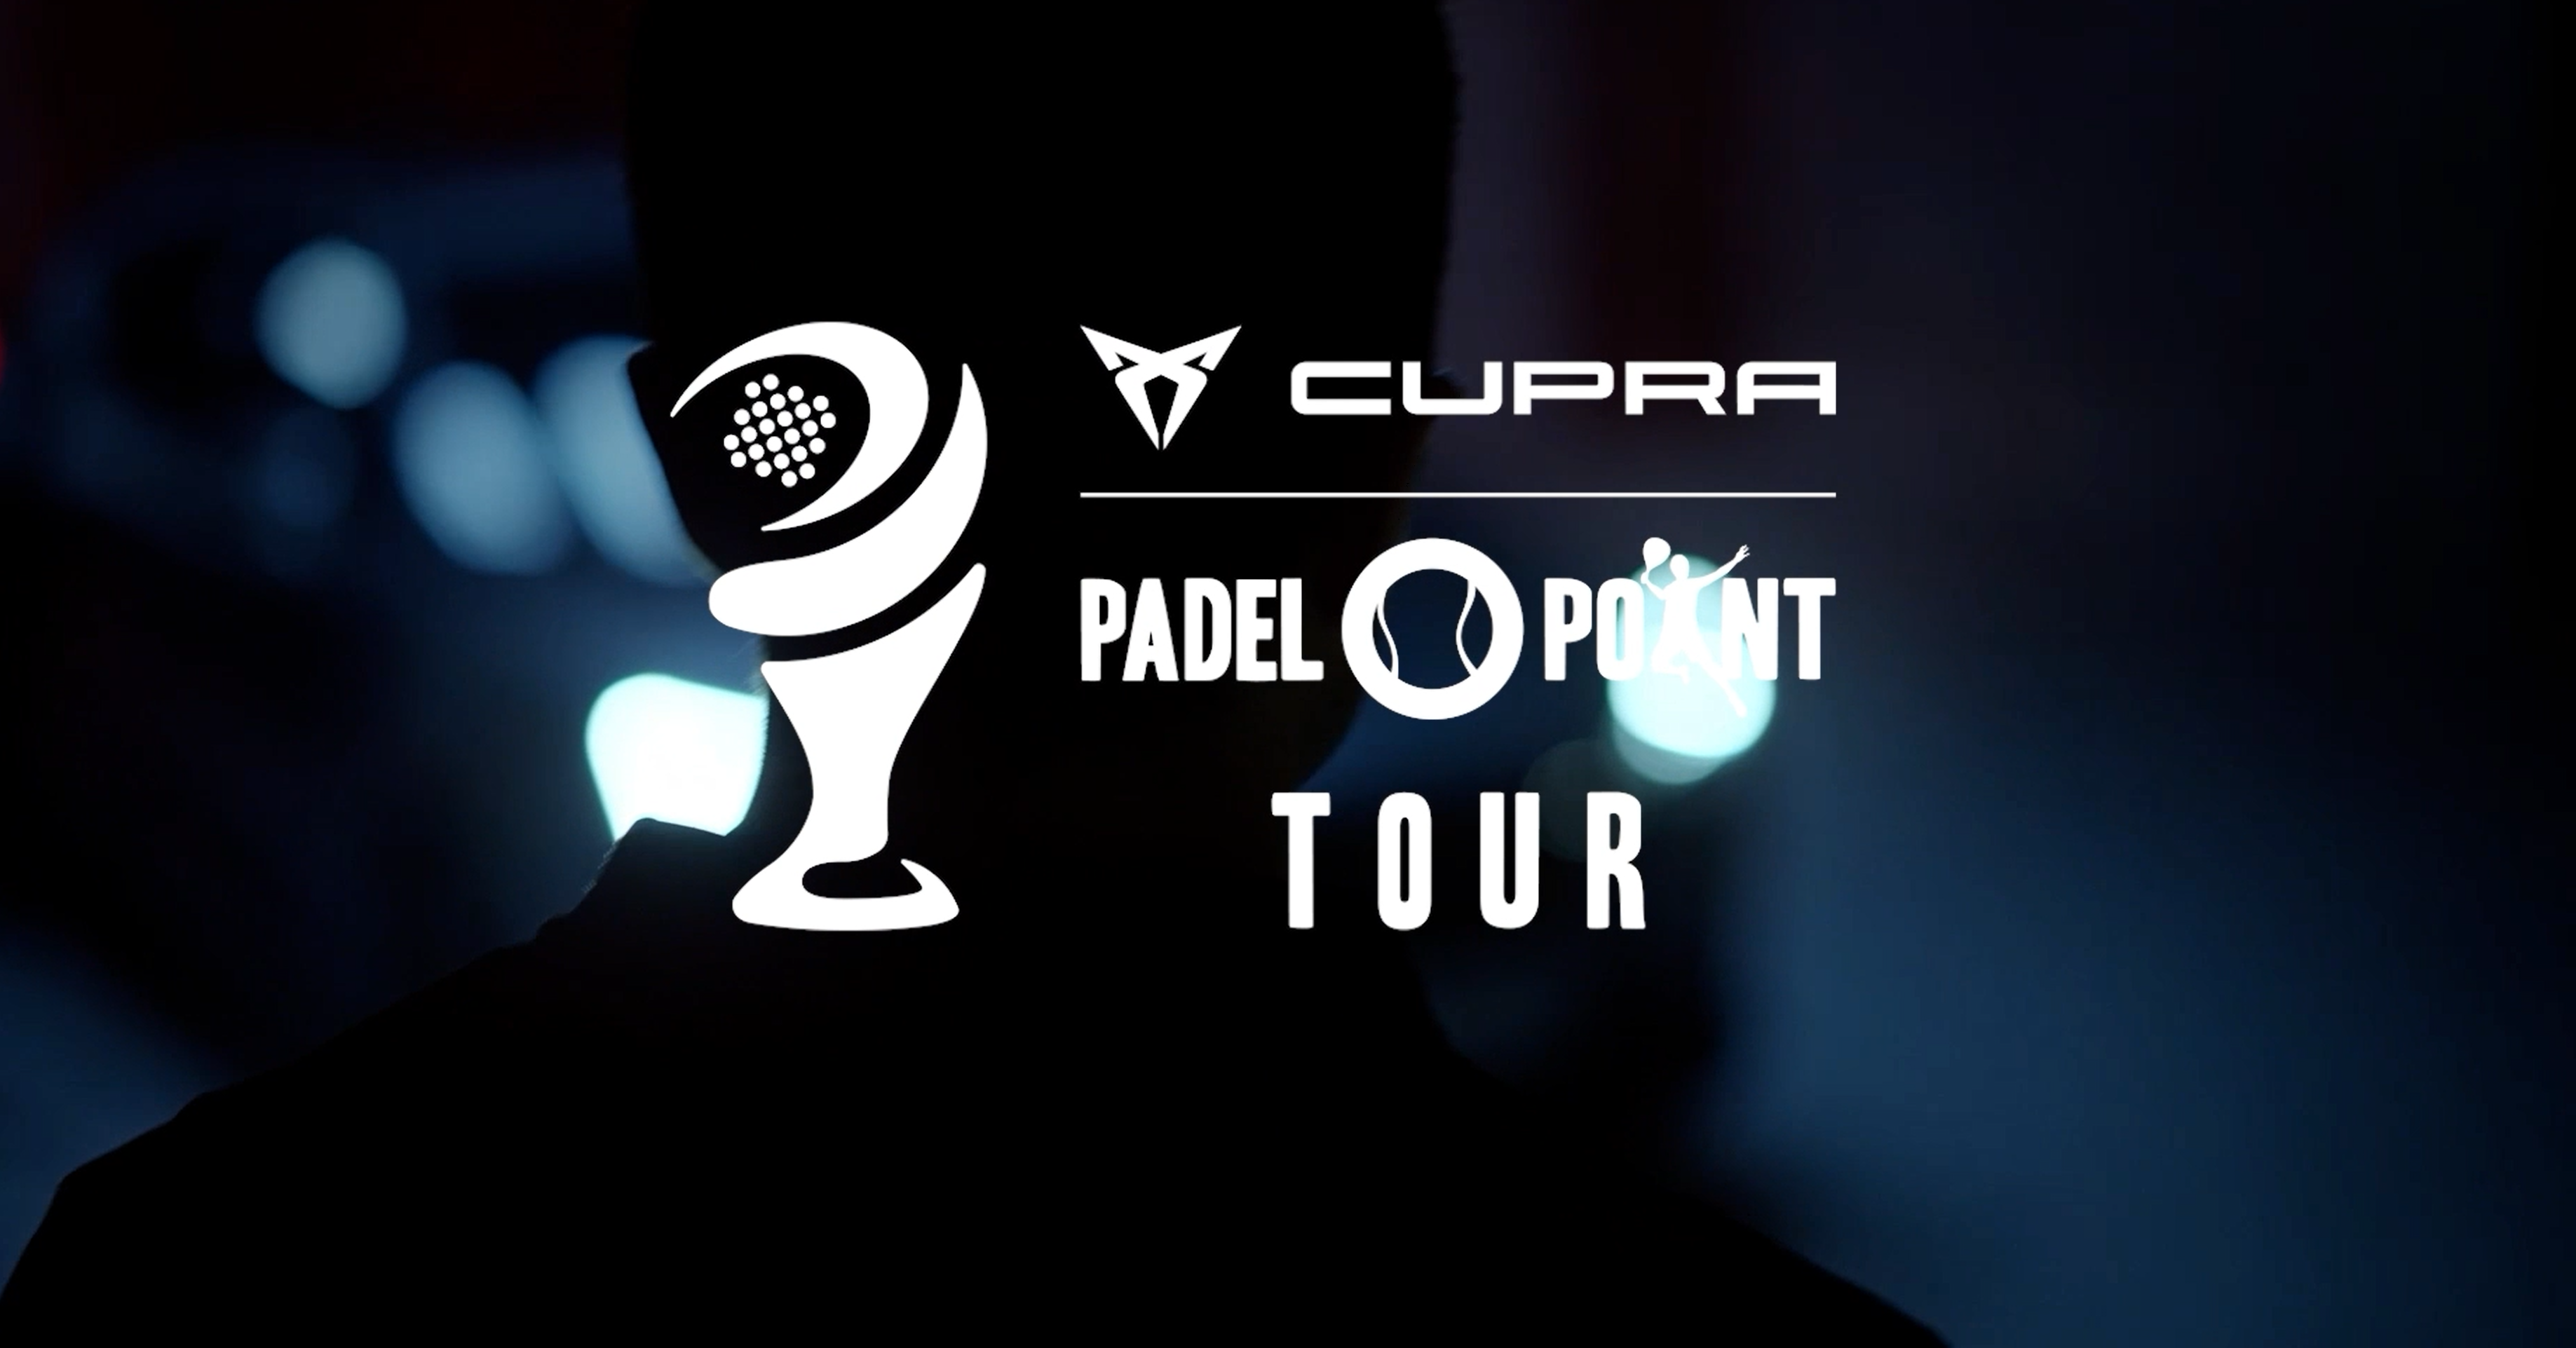 Cupra Padel-Point Tour Rennes – Une exhibition alléchante !